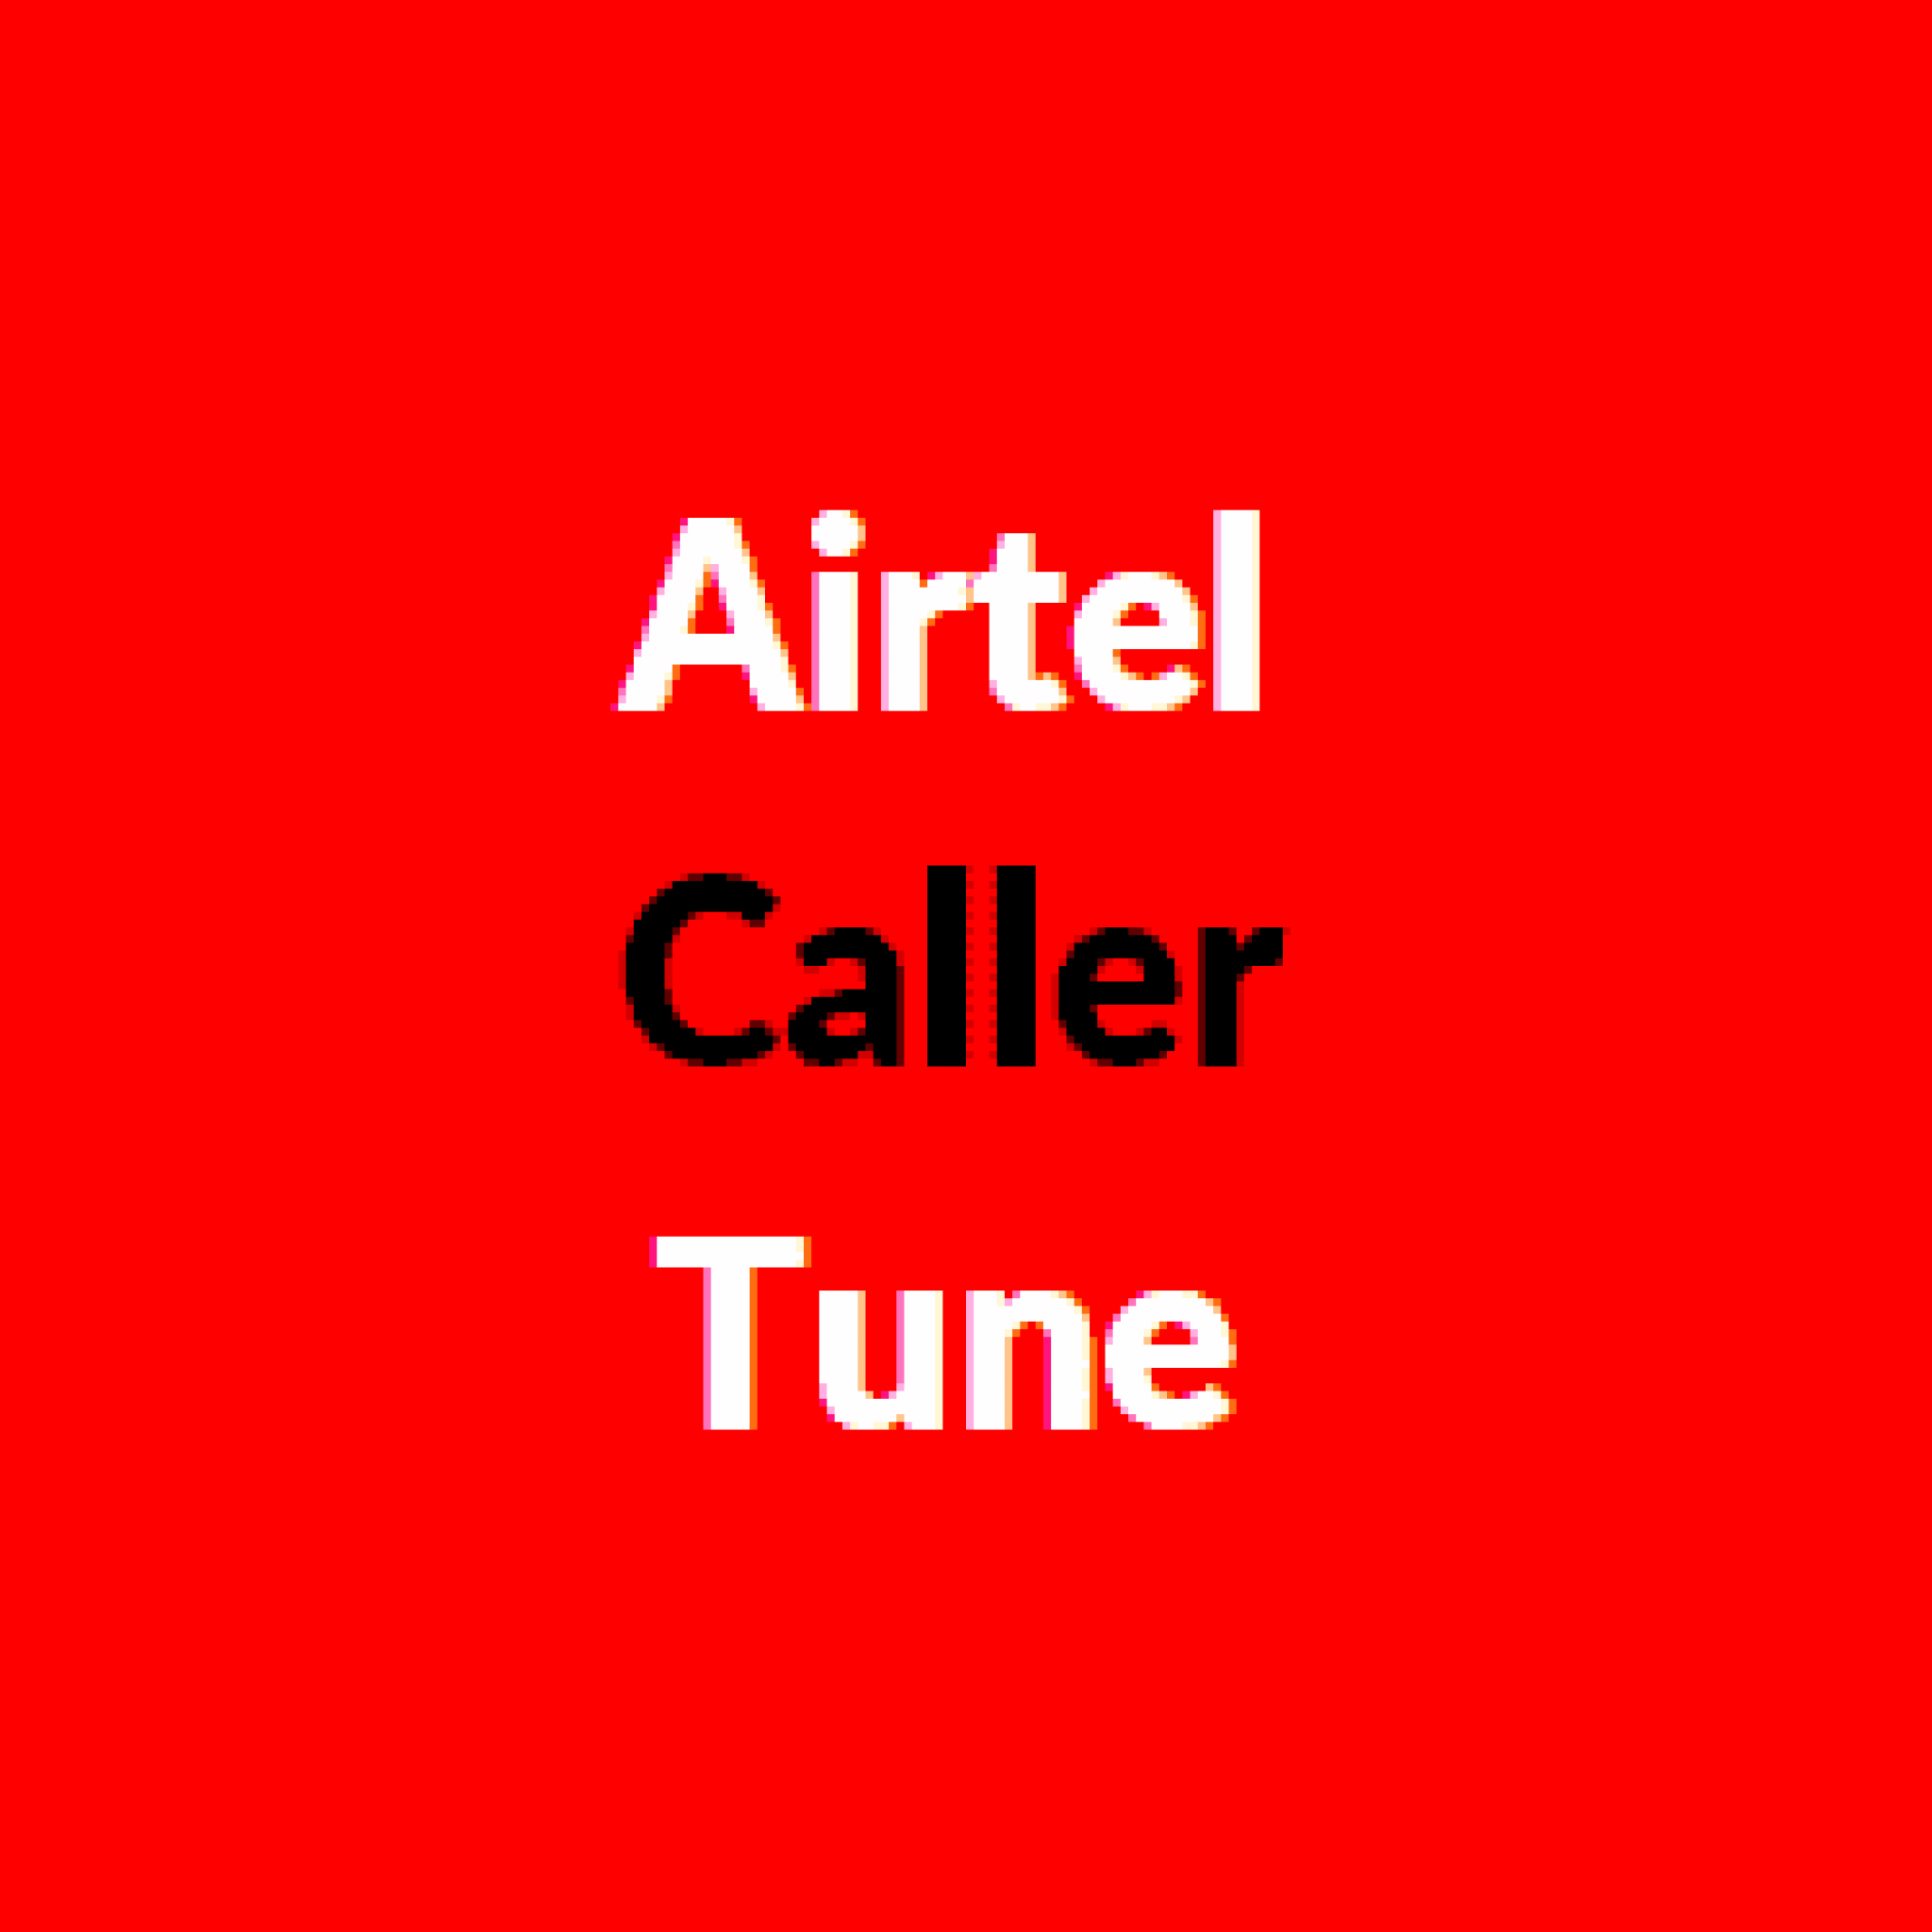 airtel caller tune sakhiyaan